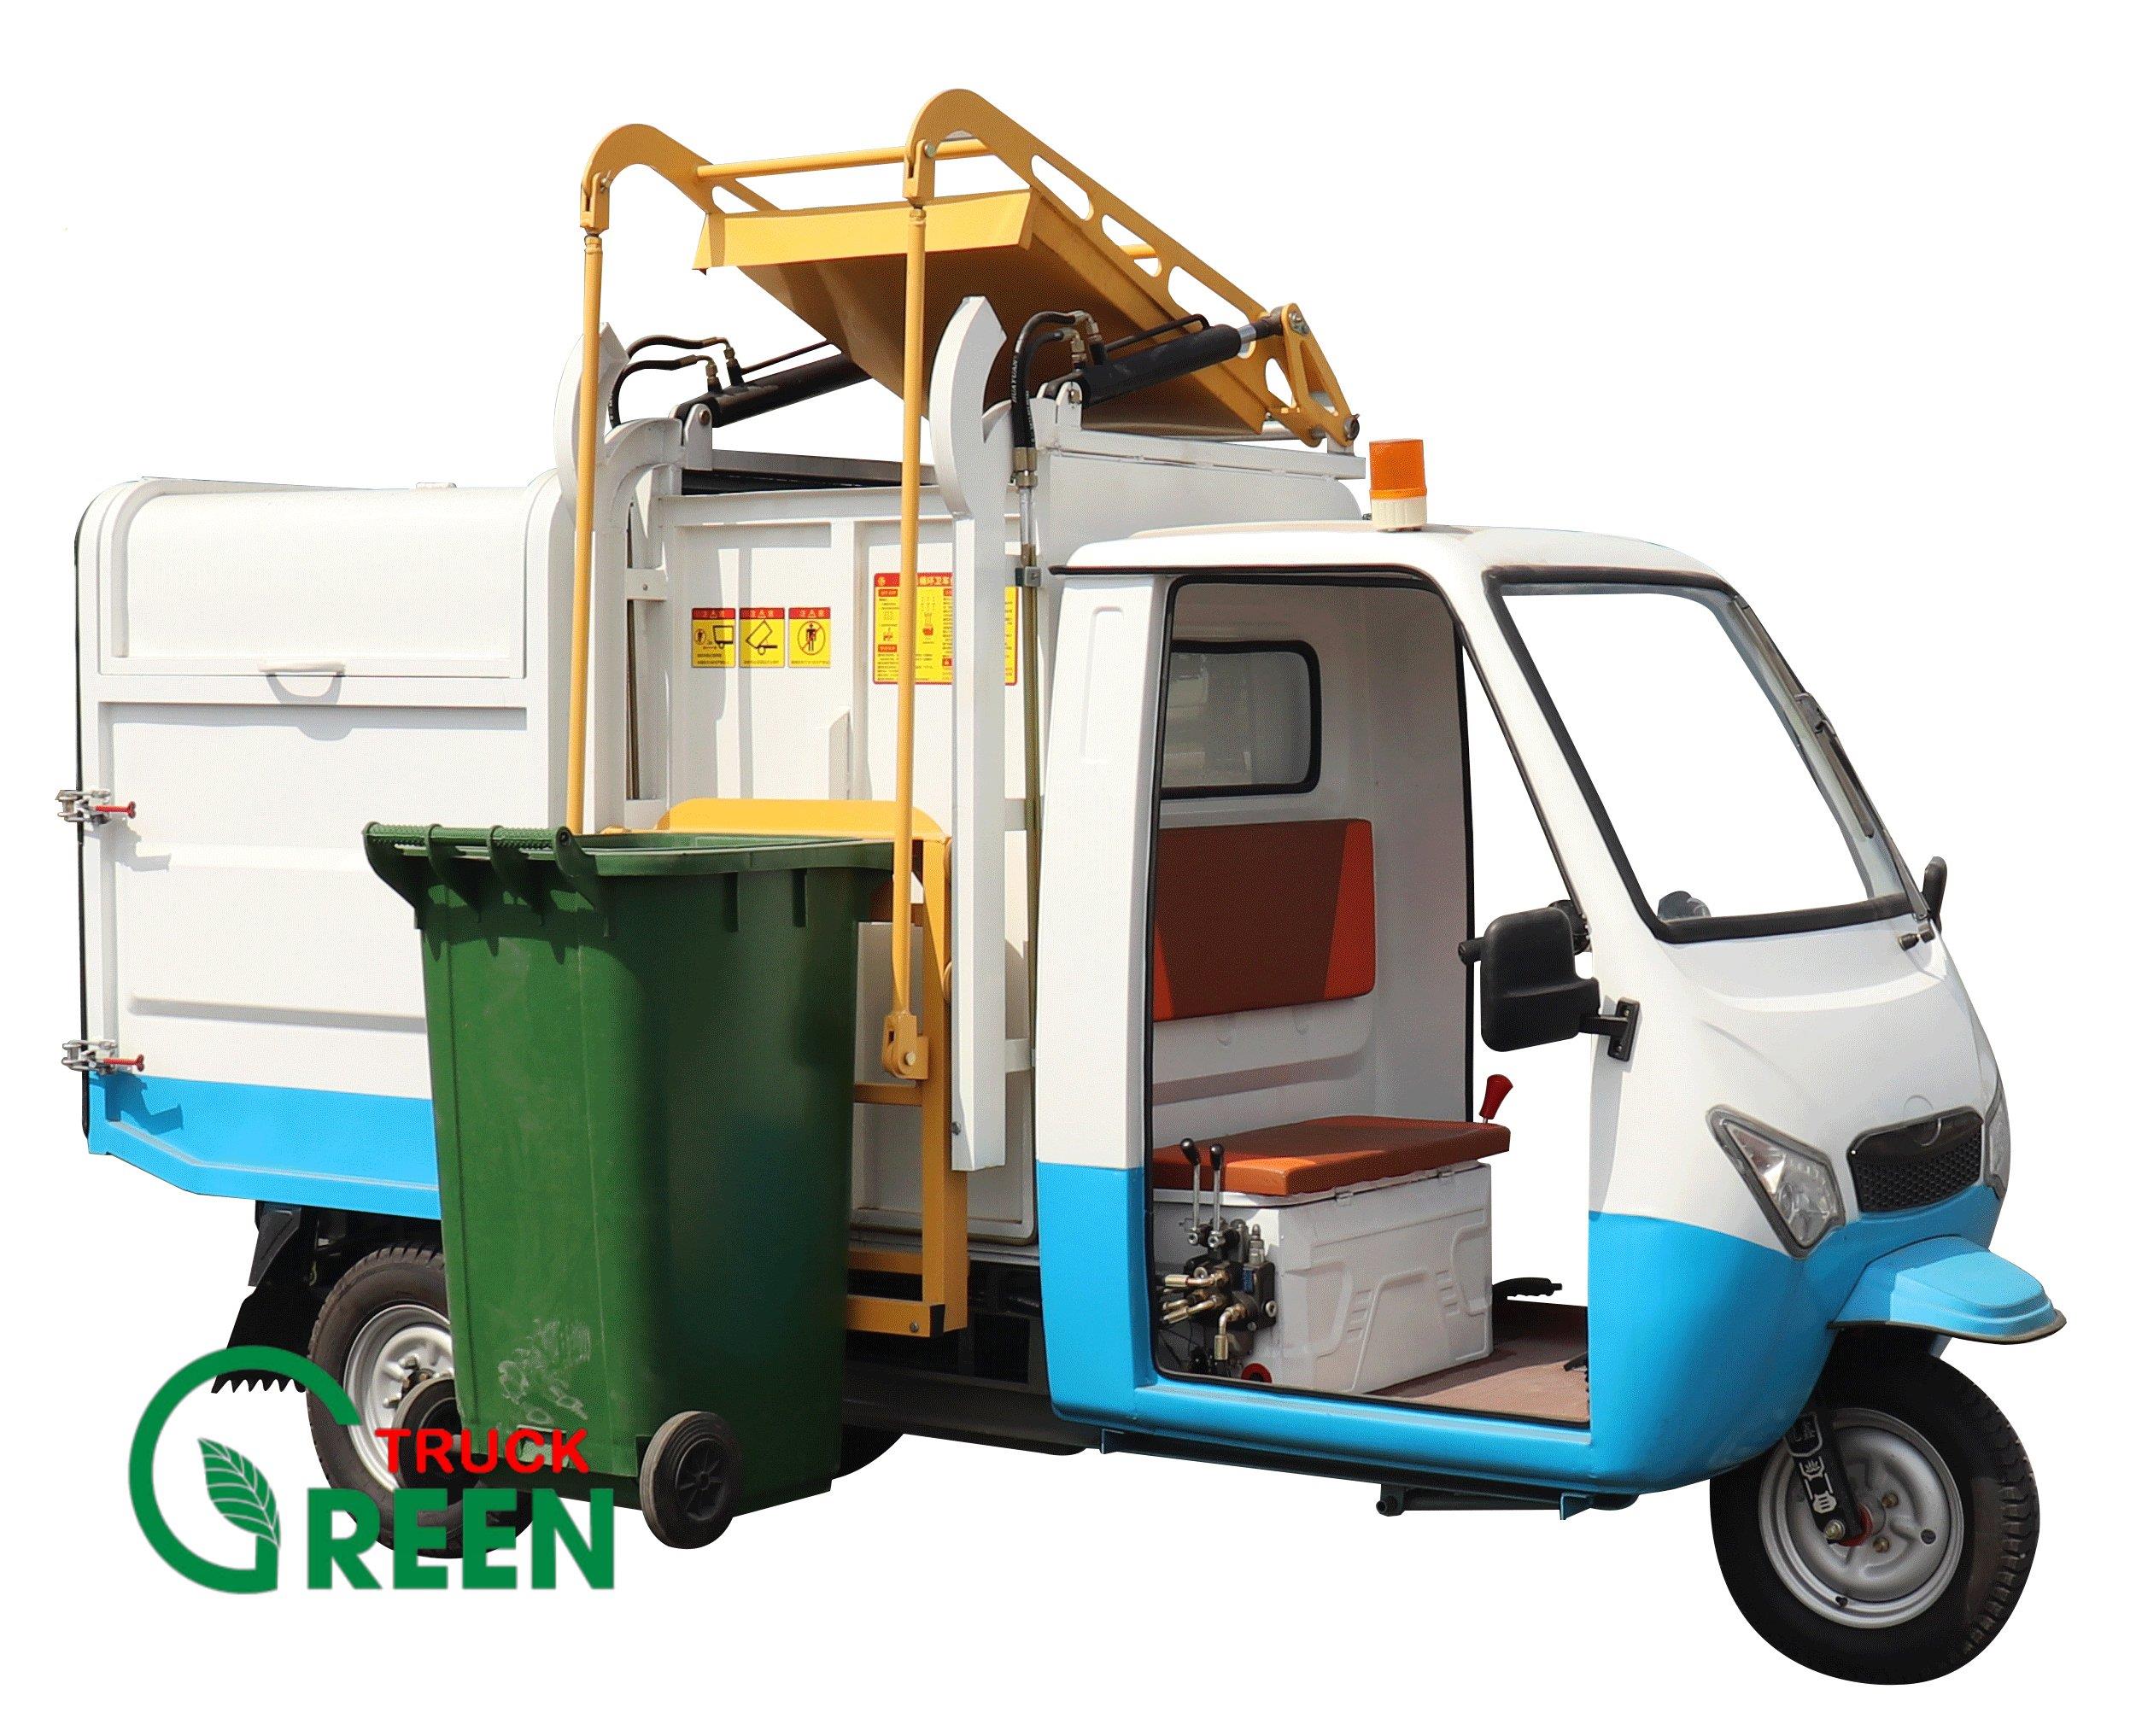 Xe điện chở rác 2.5 khối GR.BY L25 - Garbage truck